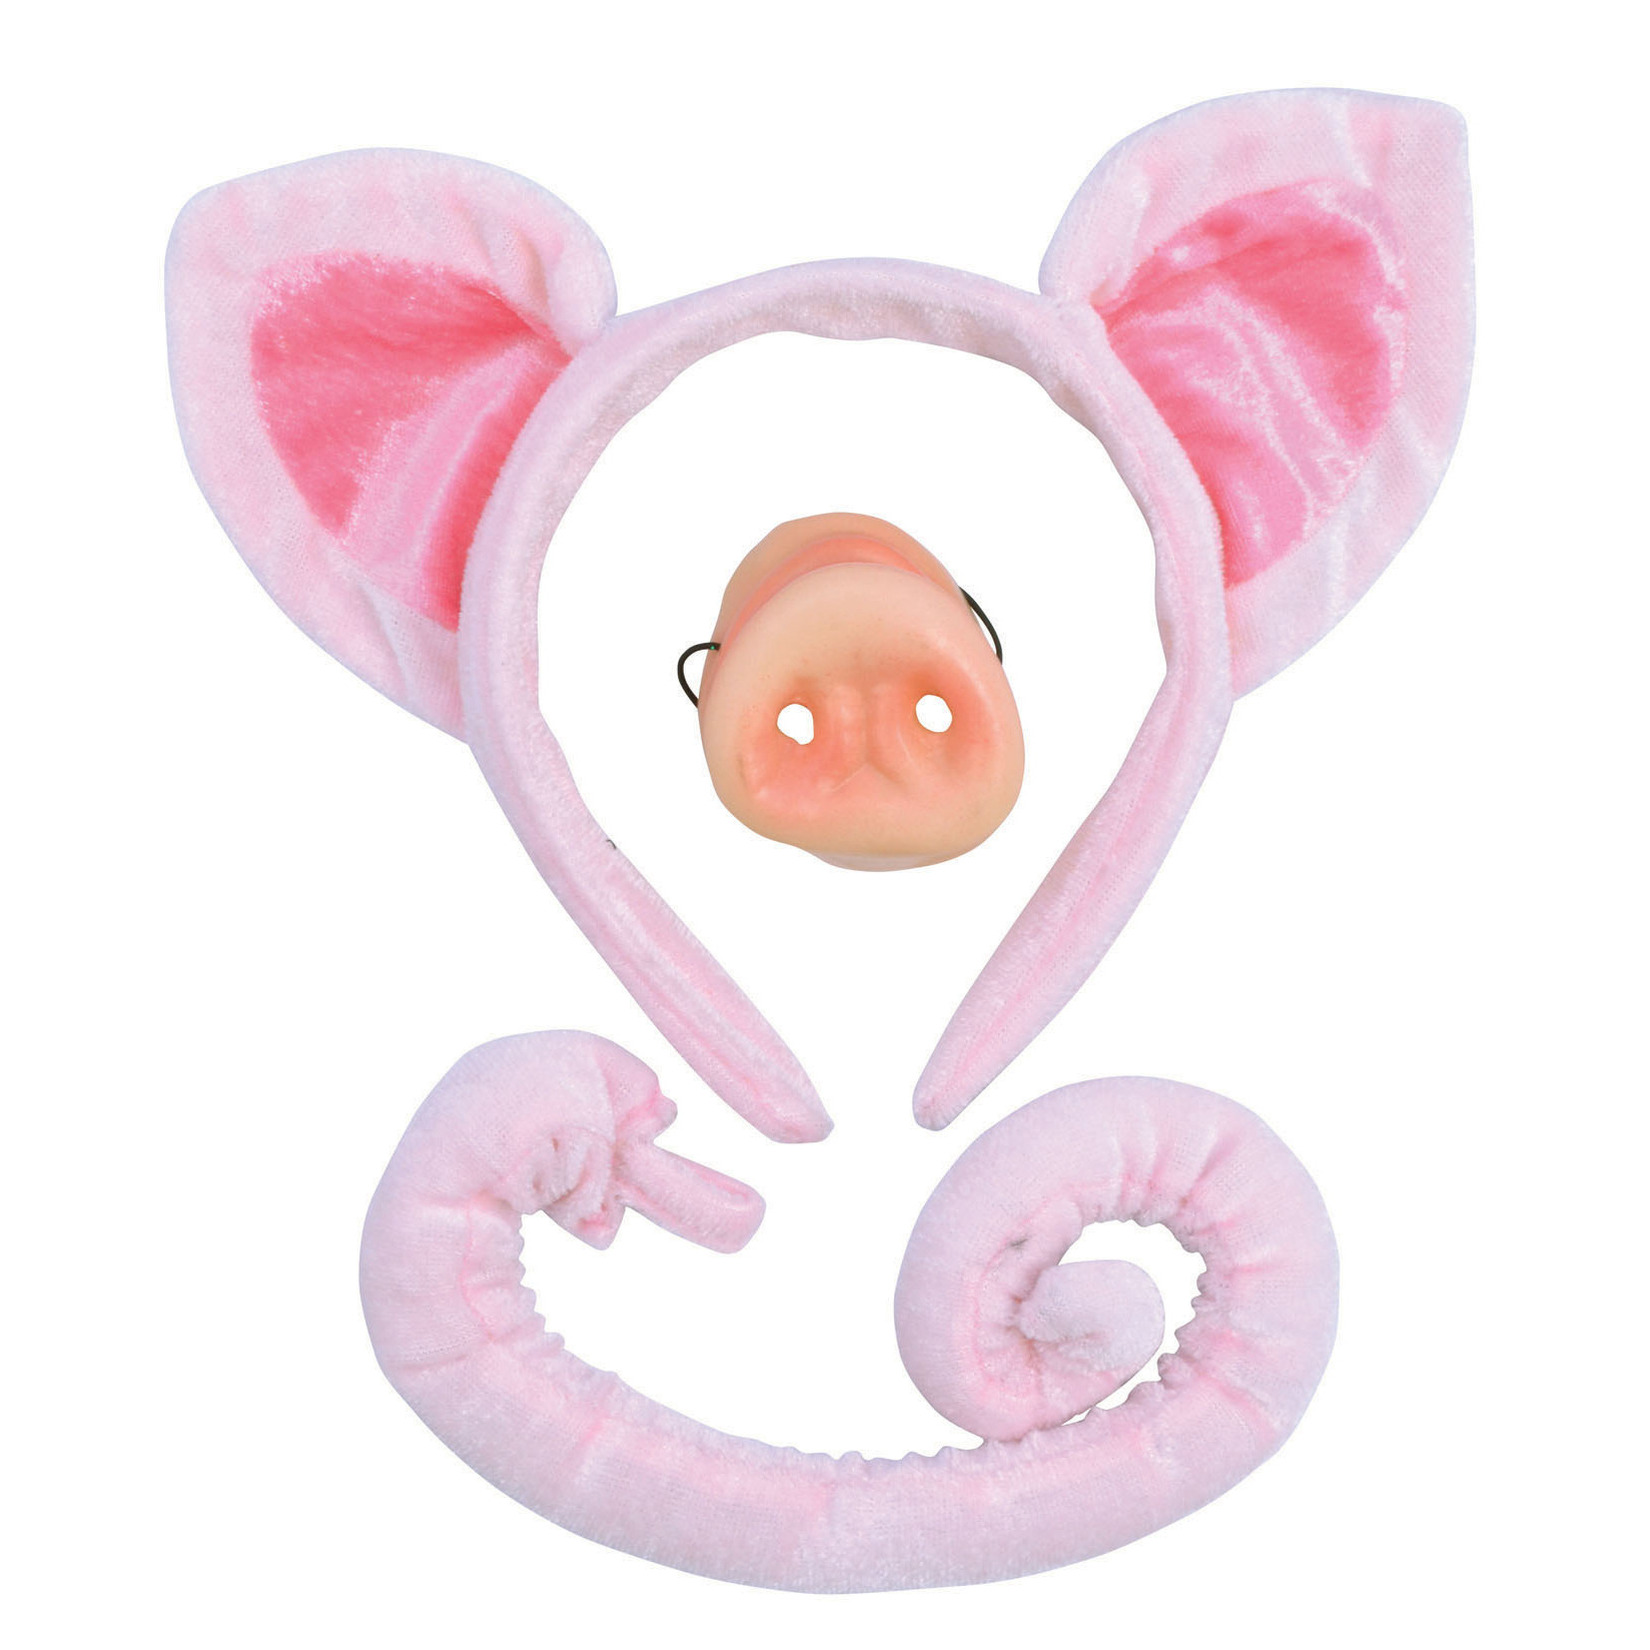 Verkleed set varken oortjes-staart-snuit roze voor kinderen